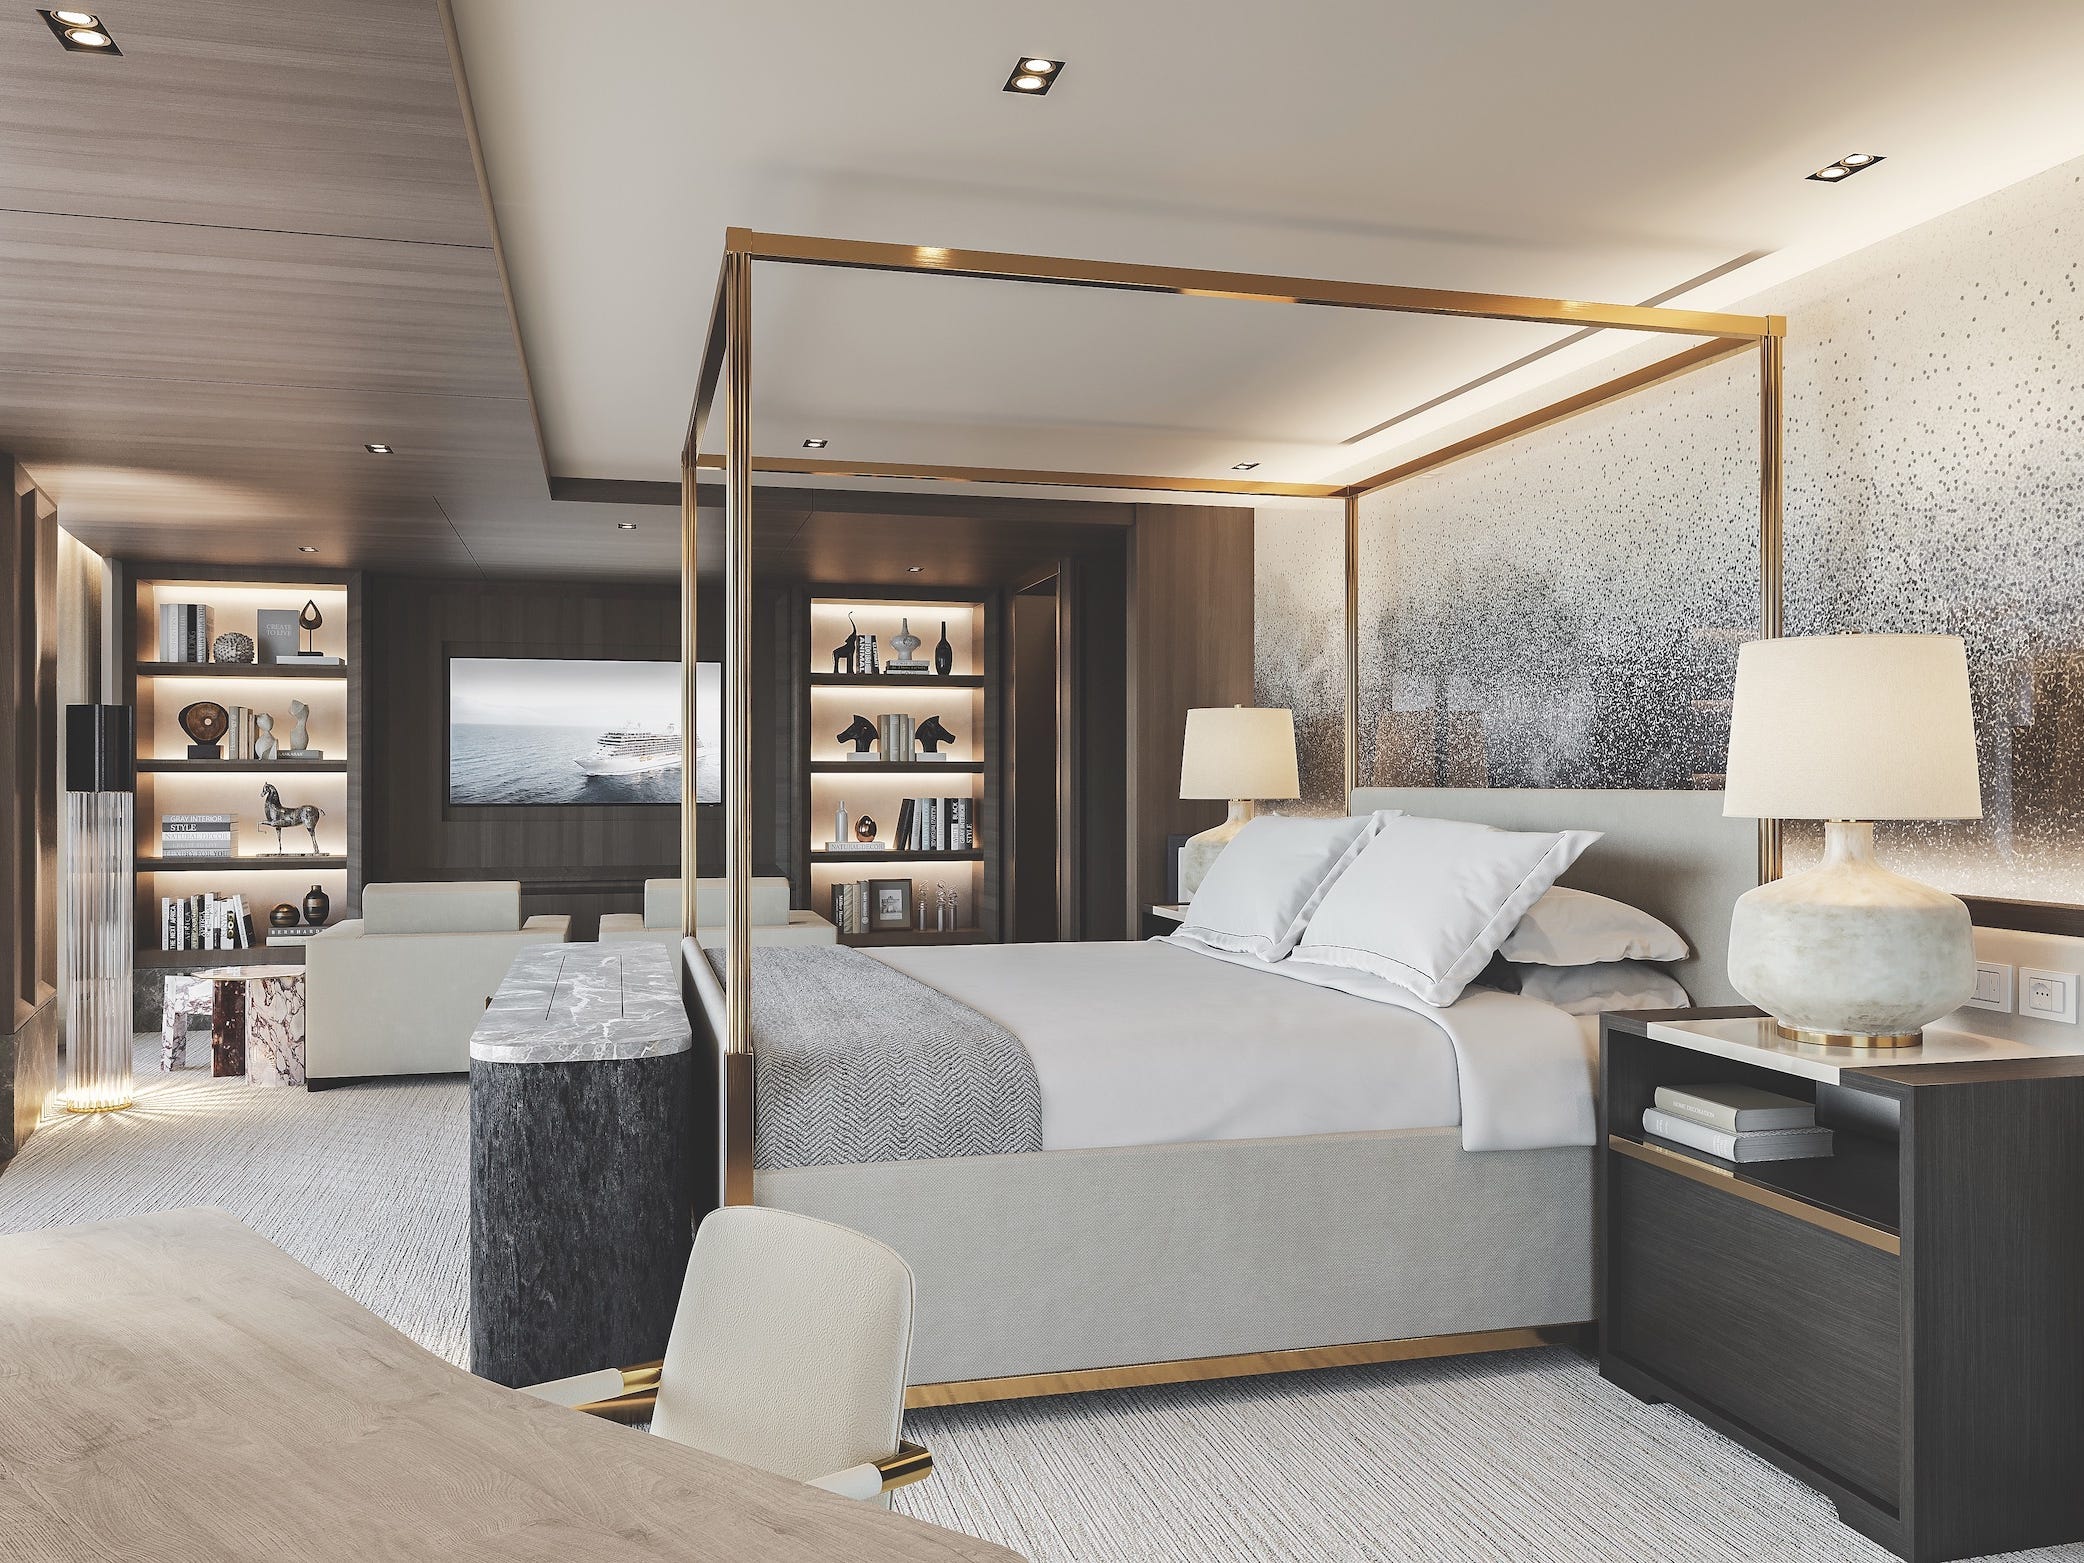 Seven Seas Grandeur's Regent Suite's primary bedroom